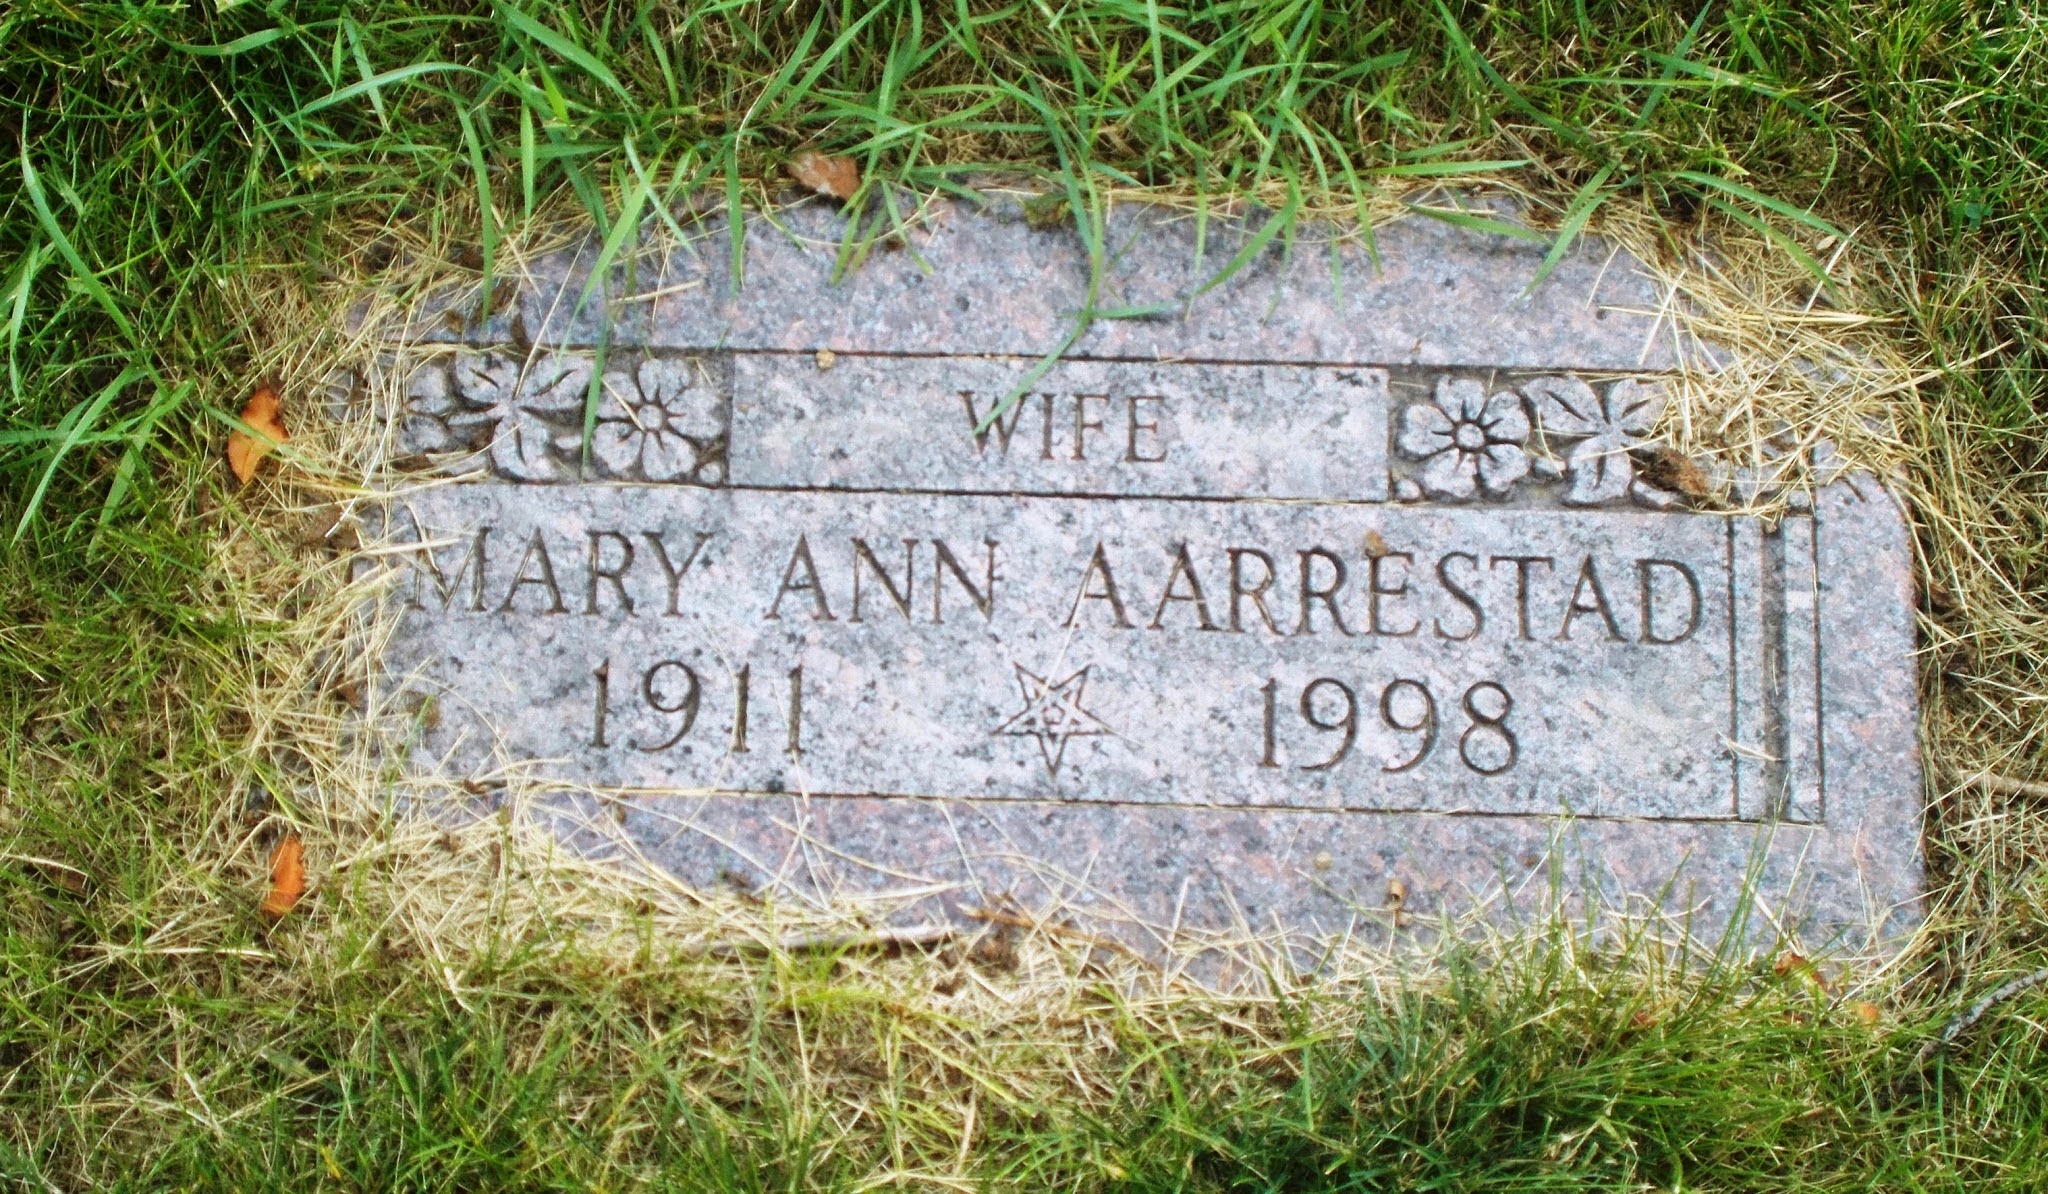 Mary Ann Aarrestad